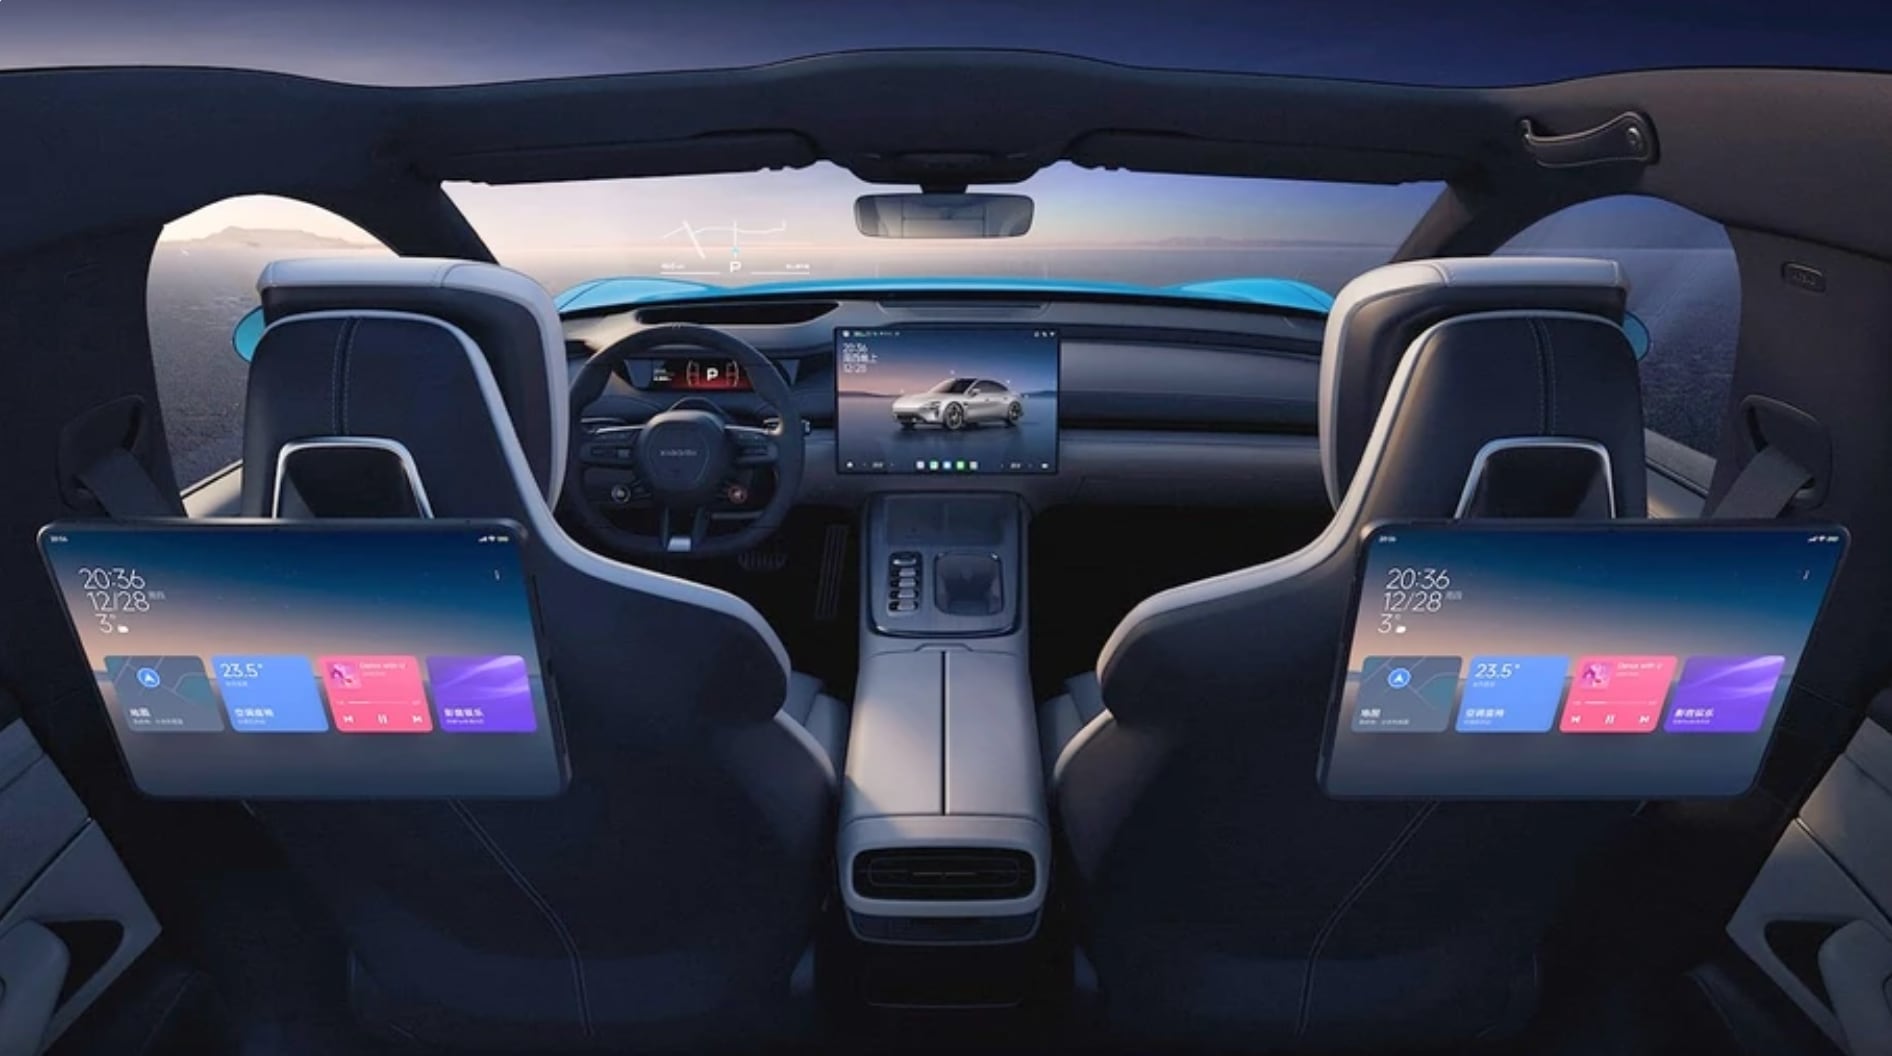 xiaomi responde críticas del lanzamiento de su auto eléctrico con video de la fábrica que produce un coche cada 76 segundos